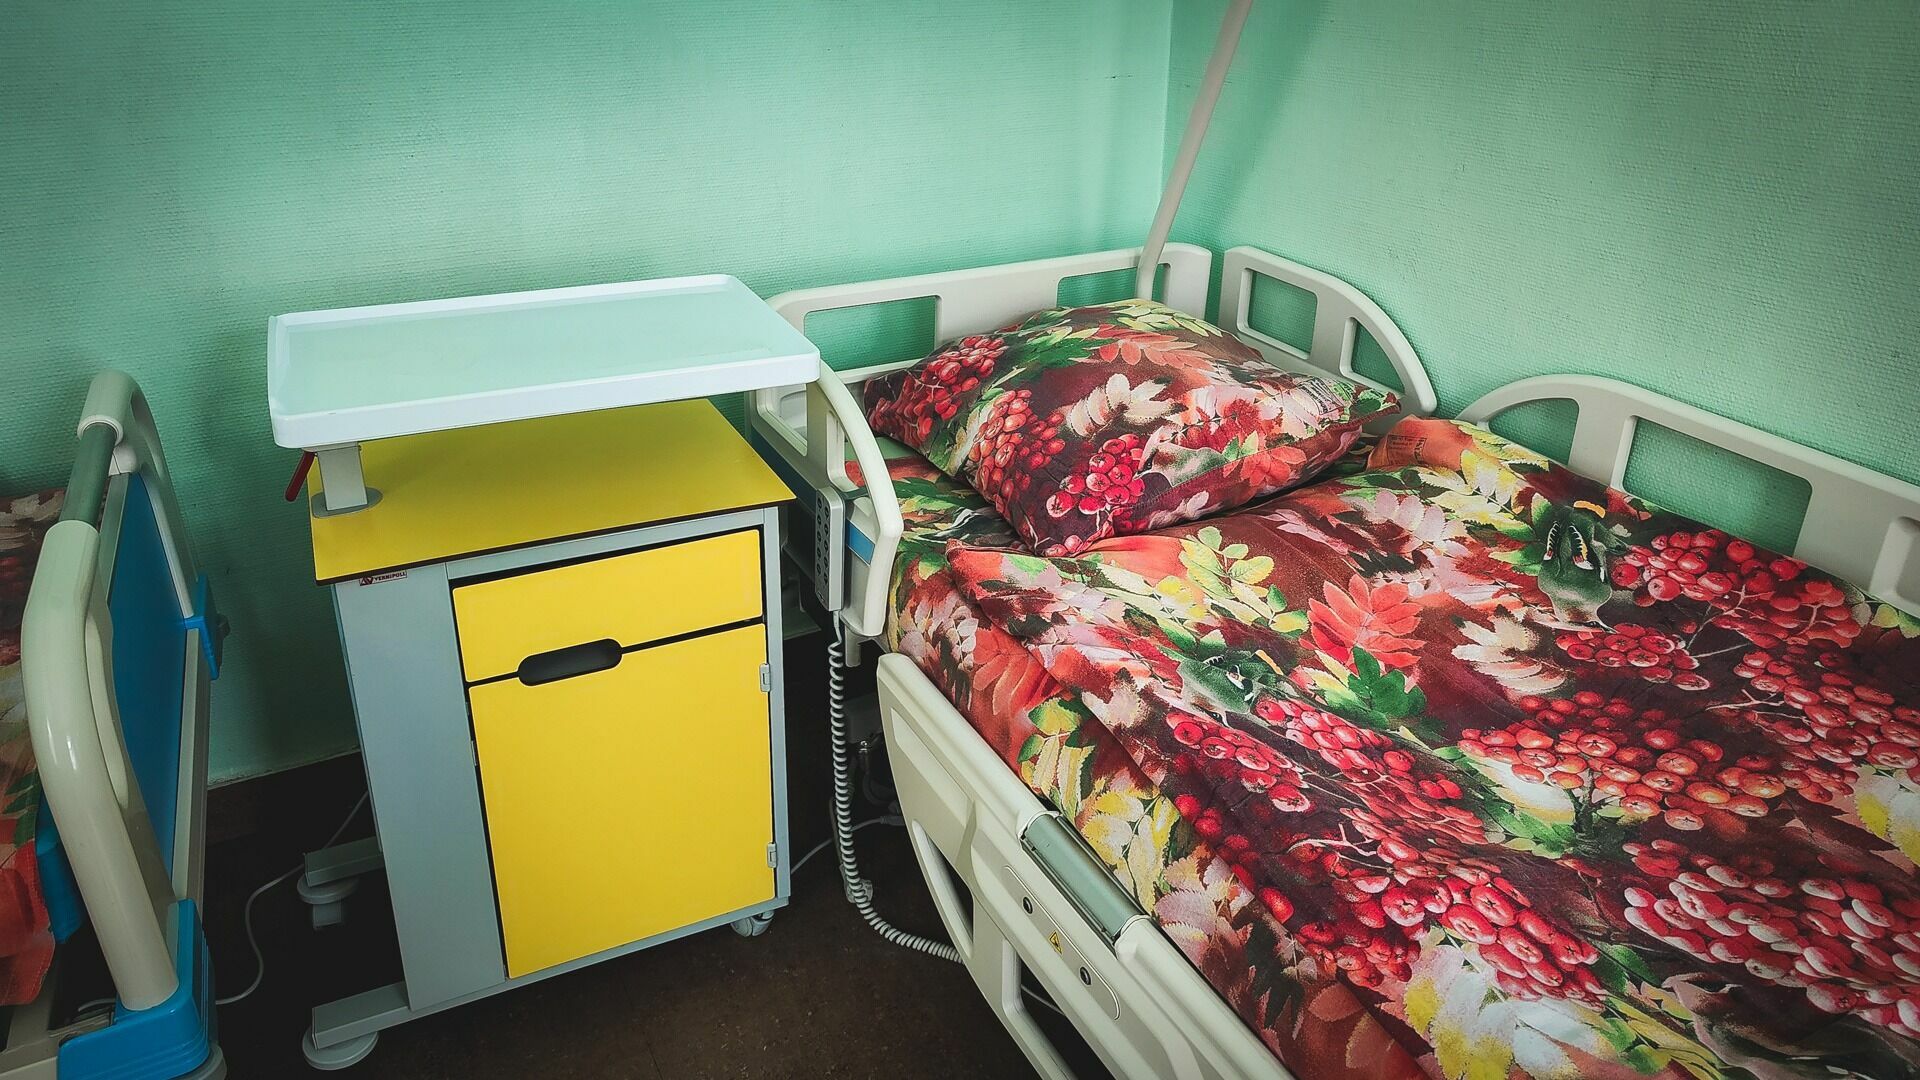 Белгородские школьники попали в больницу после употребления лекарства